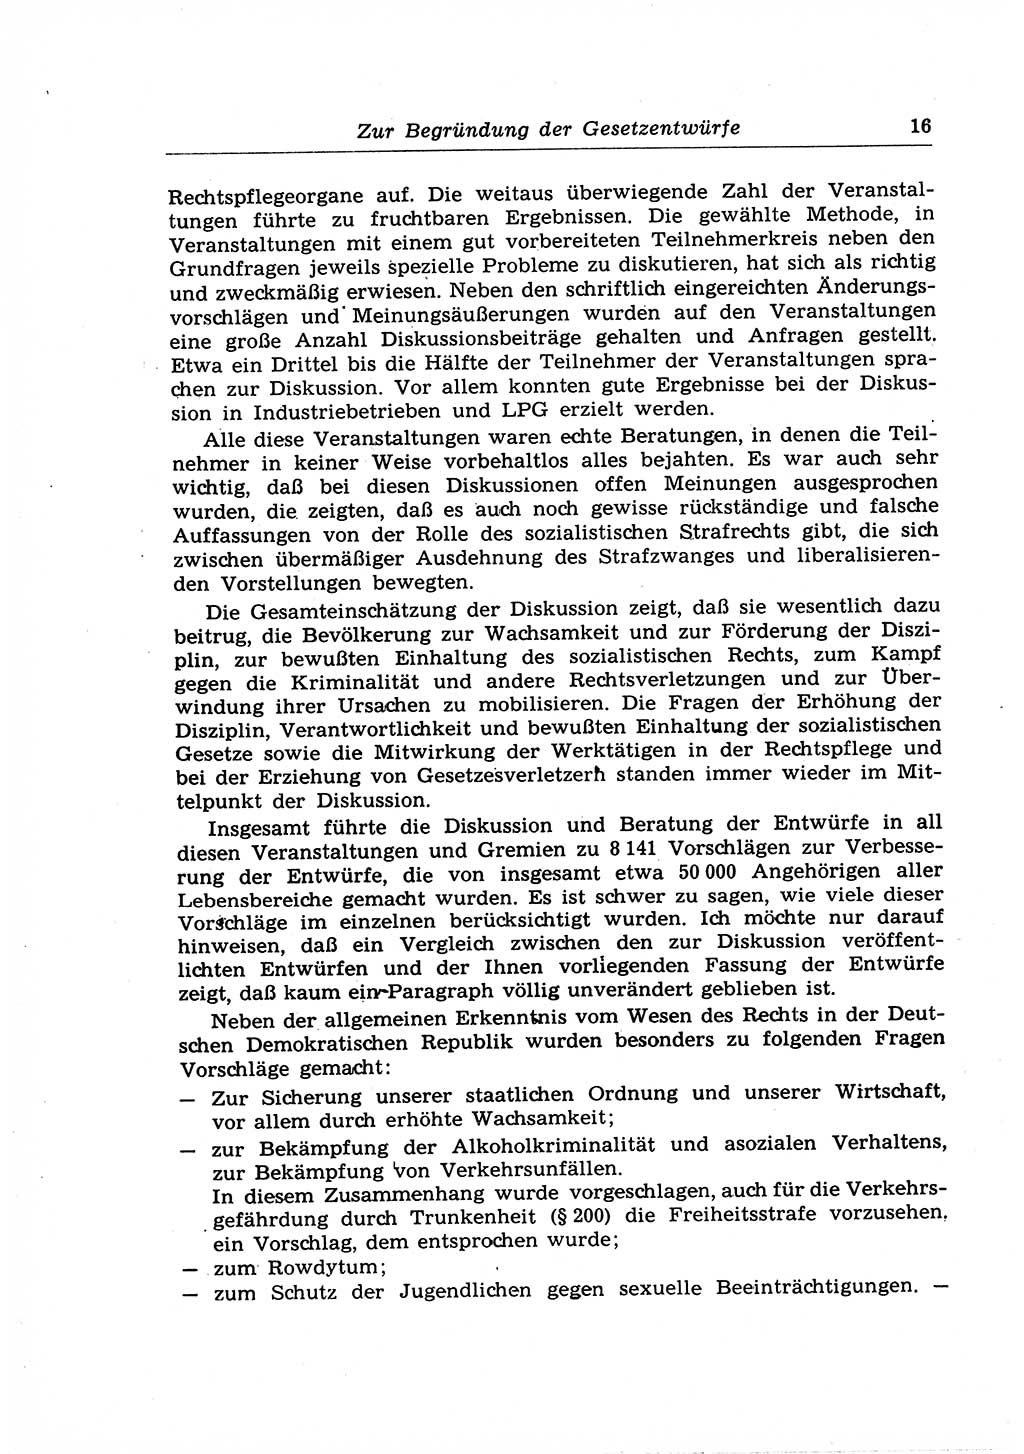 Strafrecht der Deutschen Demokratischen Republik (DDR), Lehrkommentar zum Strafgesetzbuch (StGB), Allgemeiner Teil 1969, Seite 16 (Strafr. DDR Lehrkomm. StGB AT 1969, S. 16)